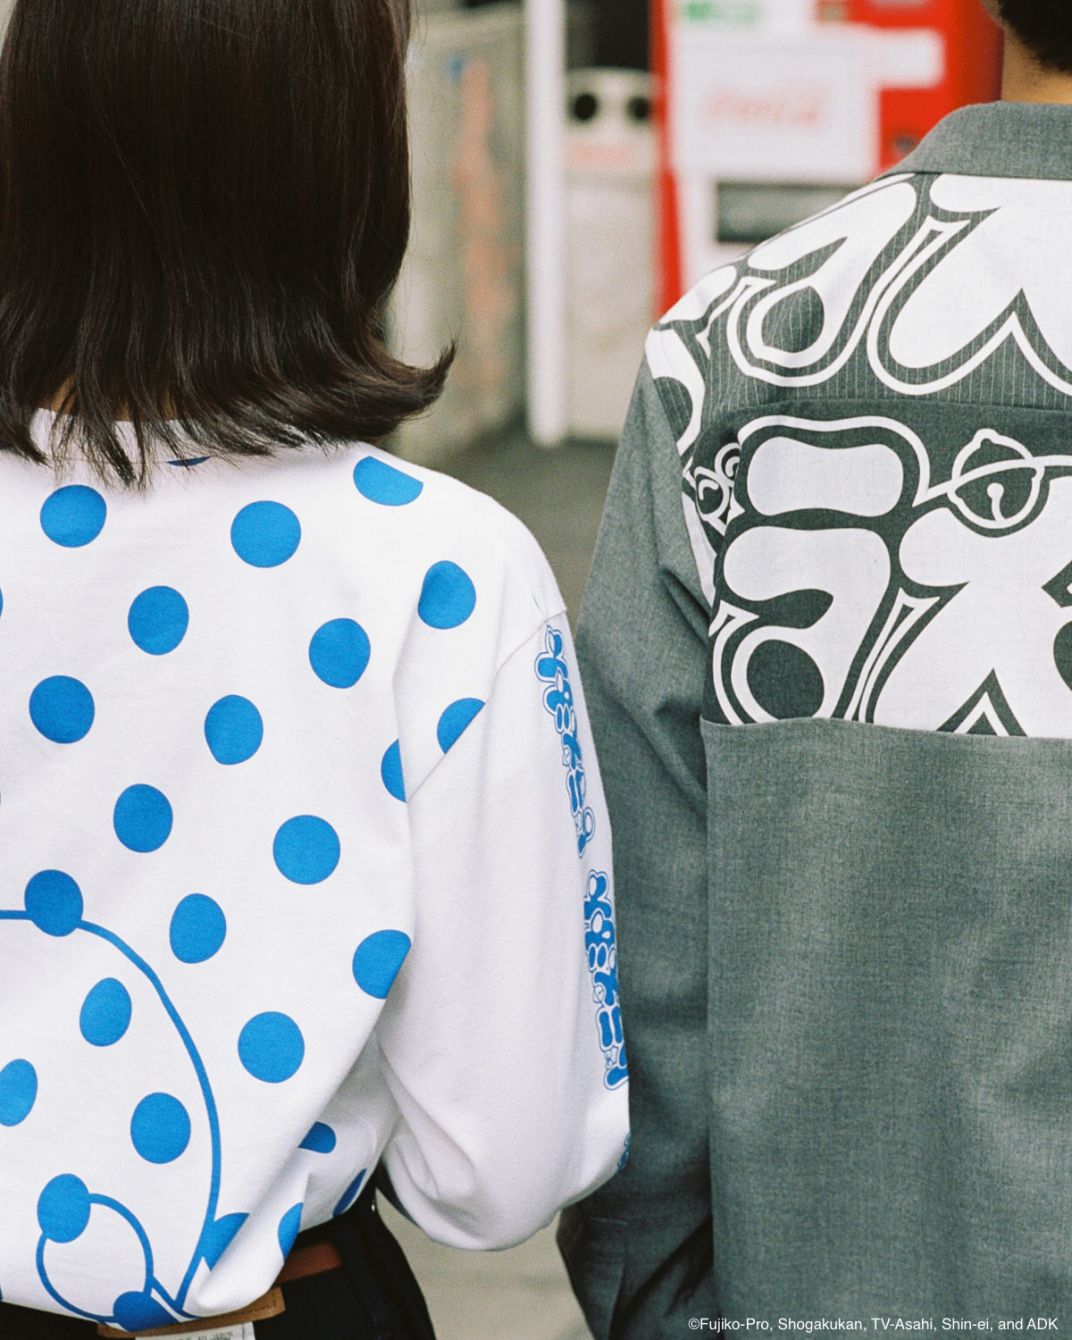 # 日本實驗服飾品牌 ALOYE × 國民動畫 哆啦 A 夢：推出異次元跨越聯名系列。 4